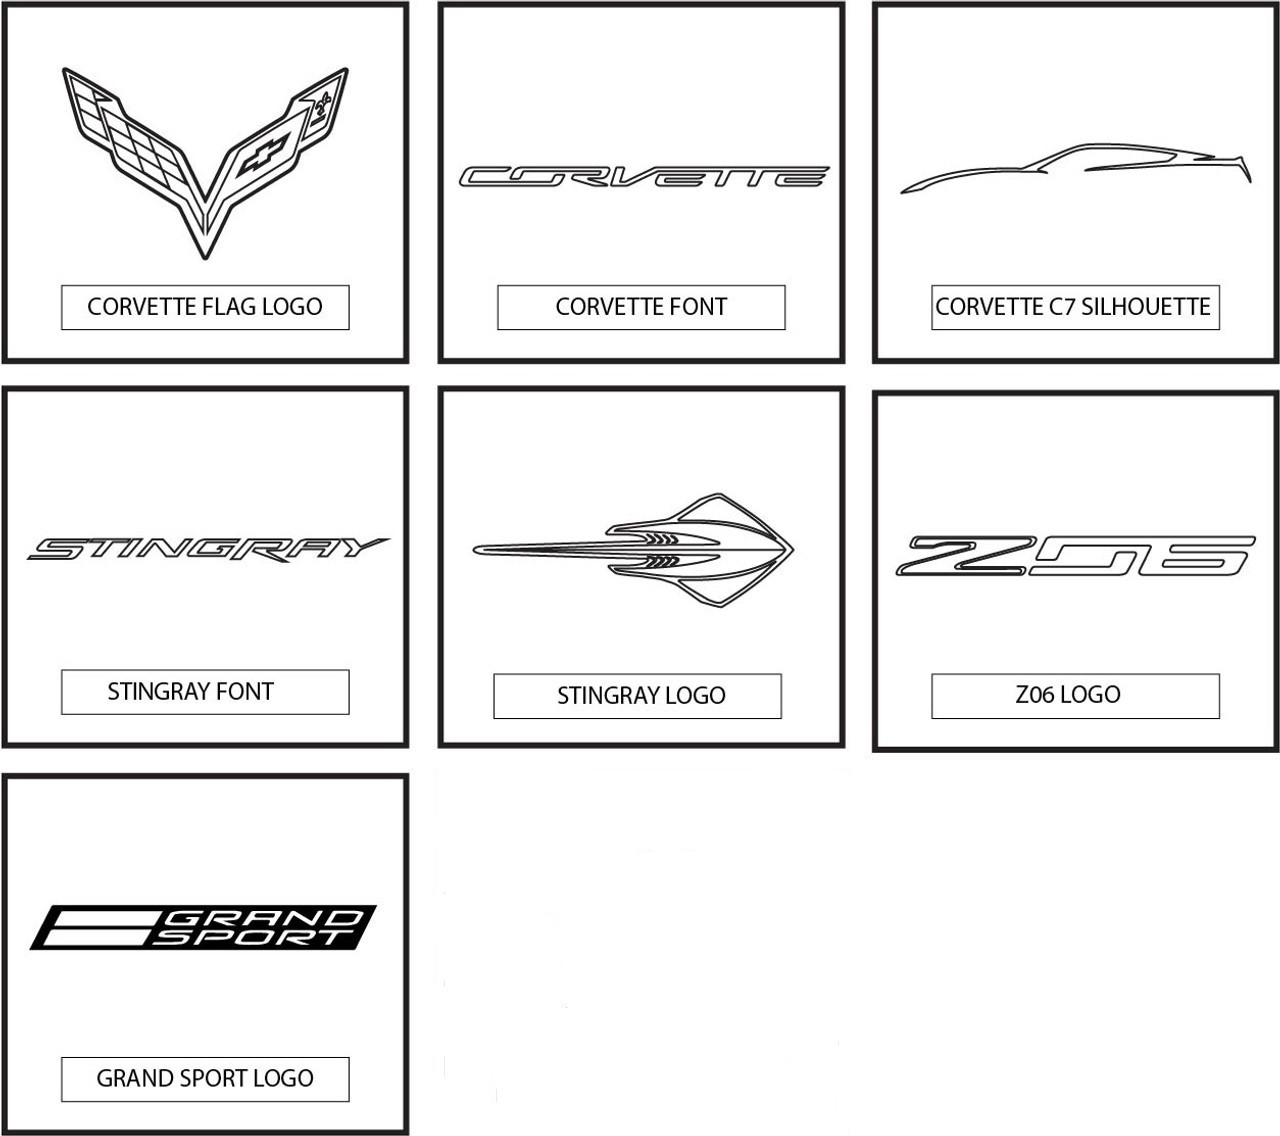 Corvette Logo Options